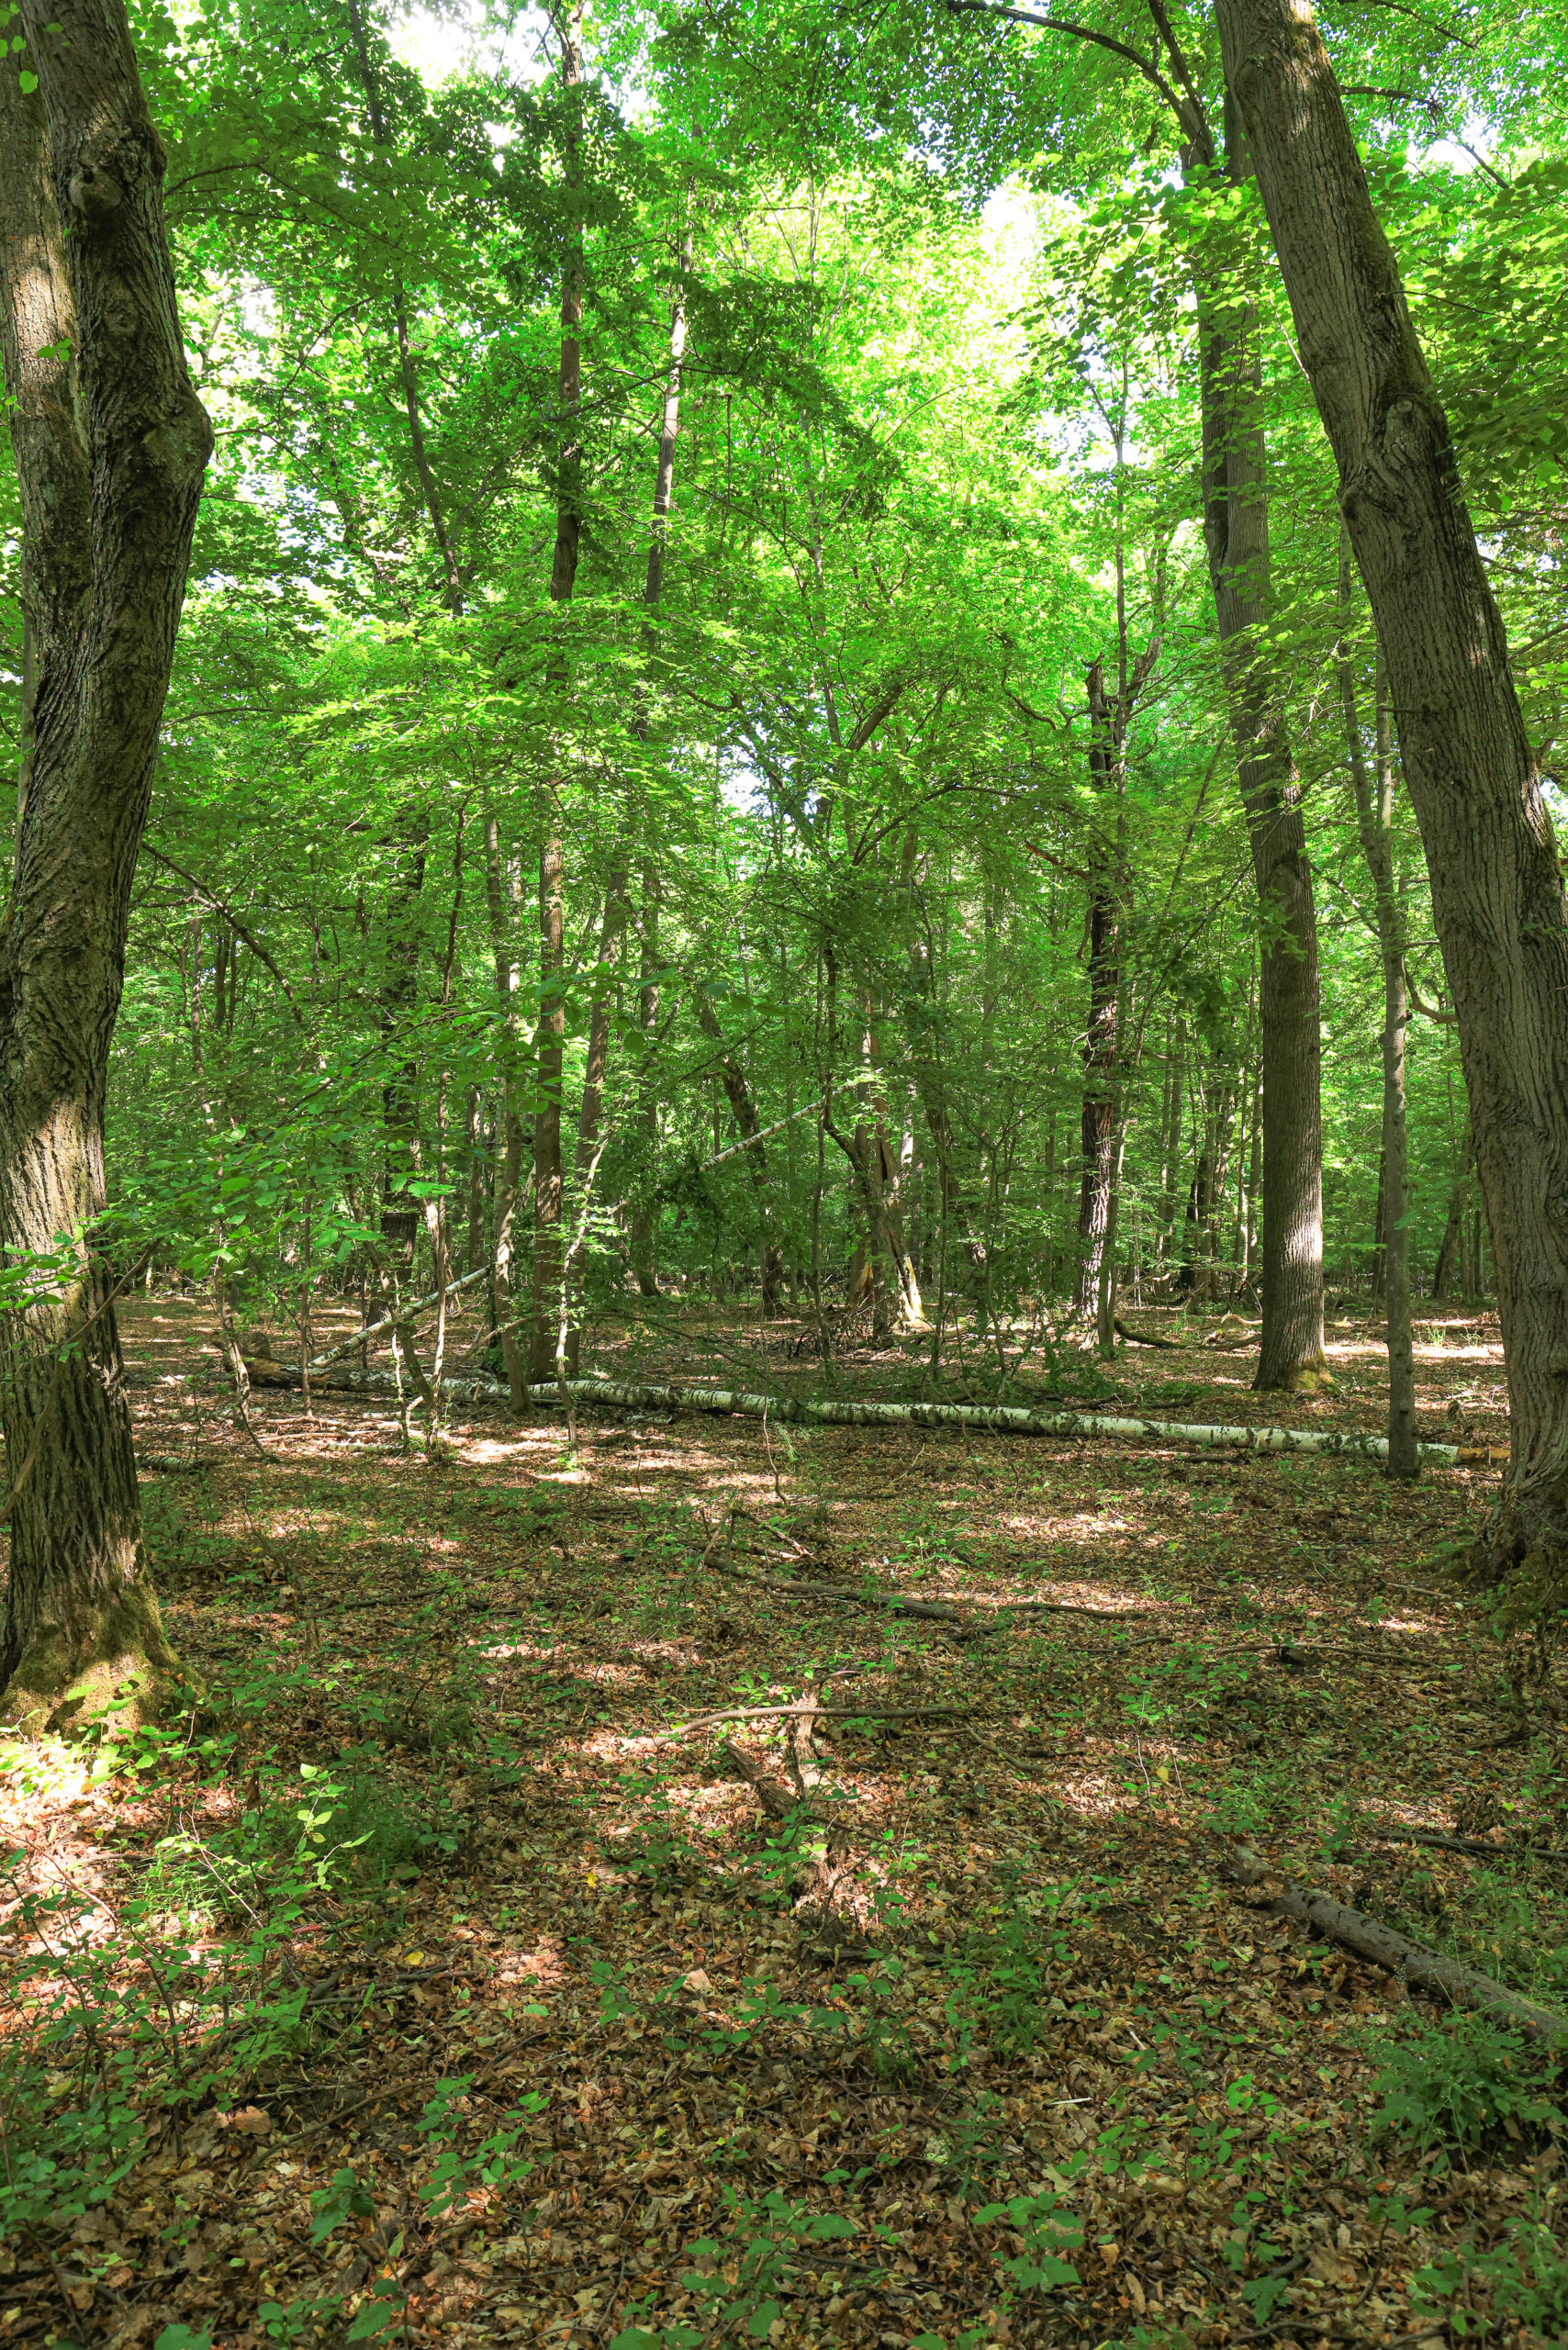 <h1>Zábělá – smíšený les</h1><br />
Pohled do interiéru smíšeného lesa s převahou dubů. Ve střední části padlý kmen břízy.